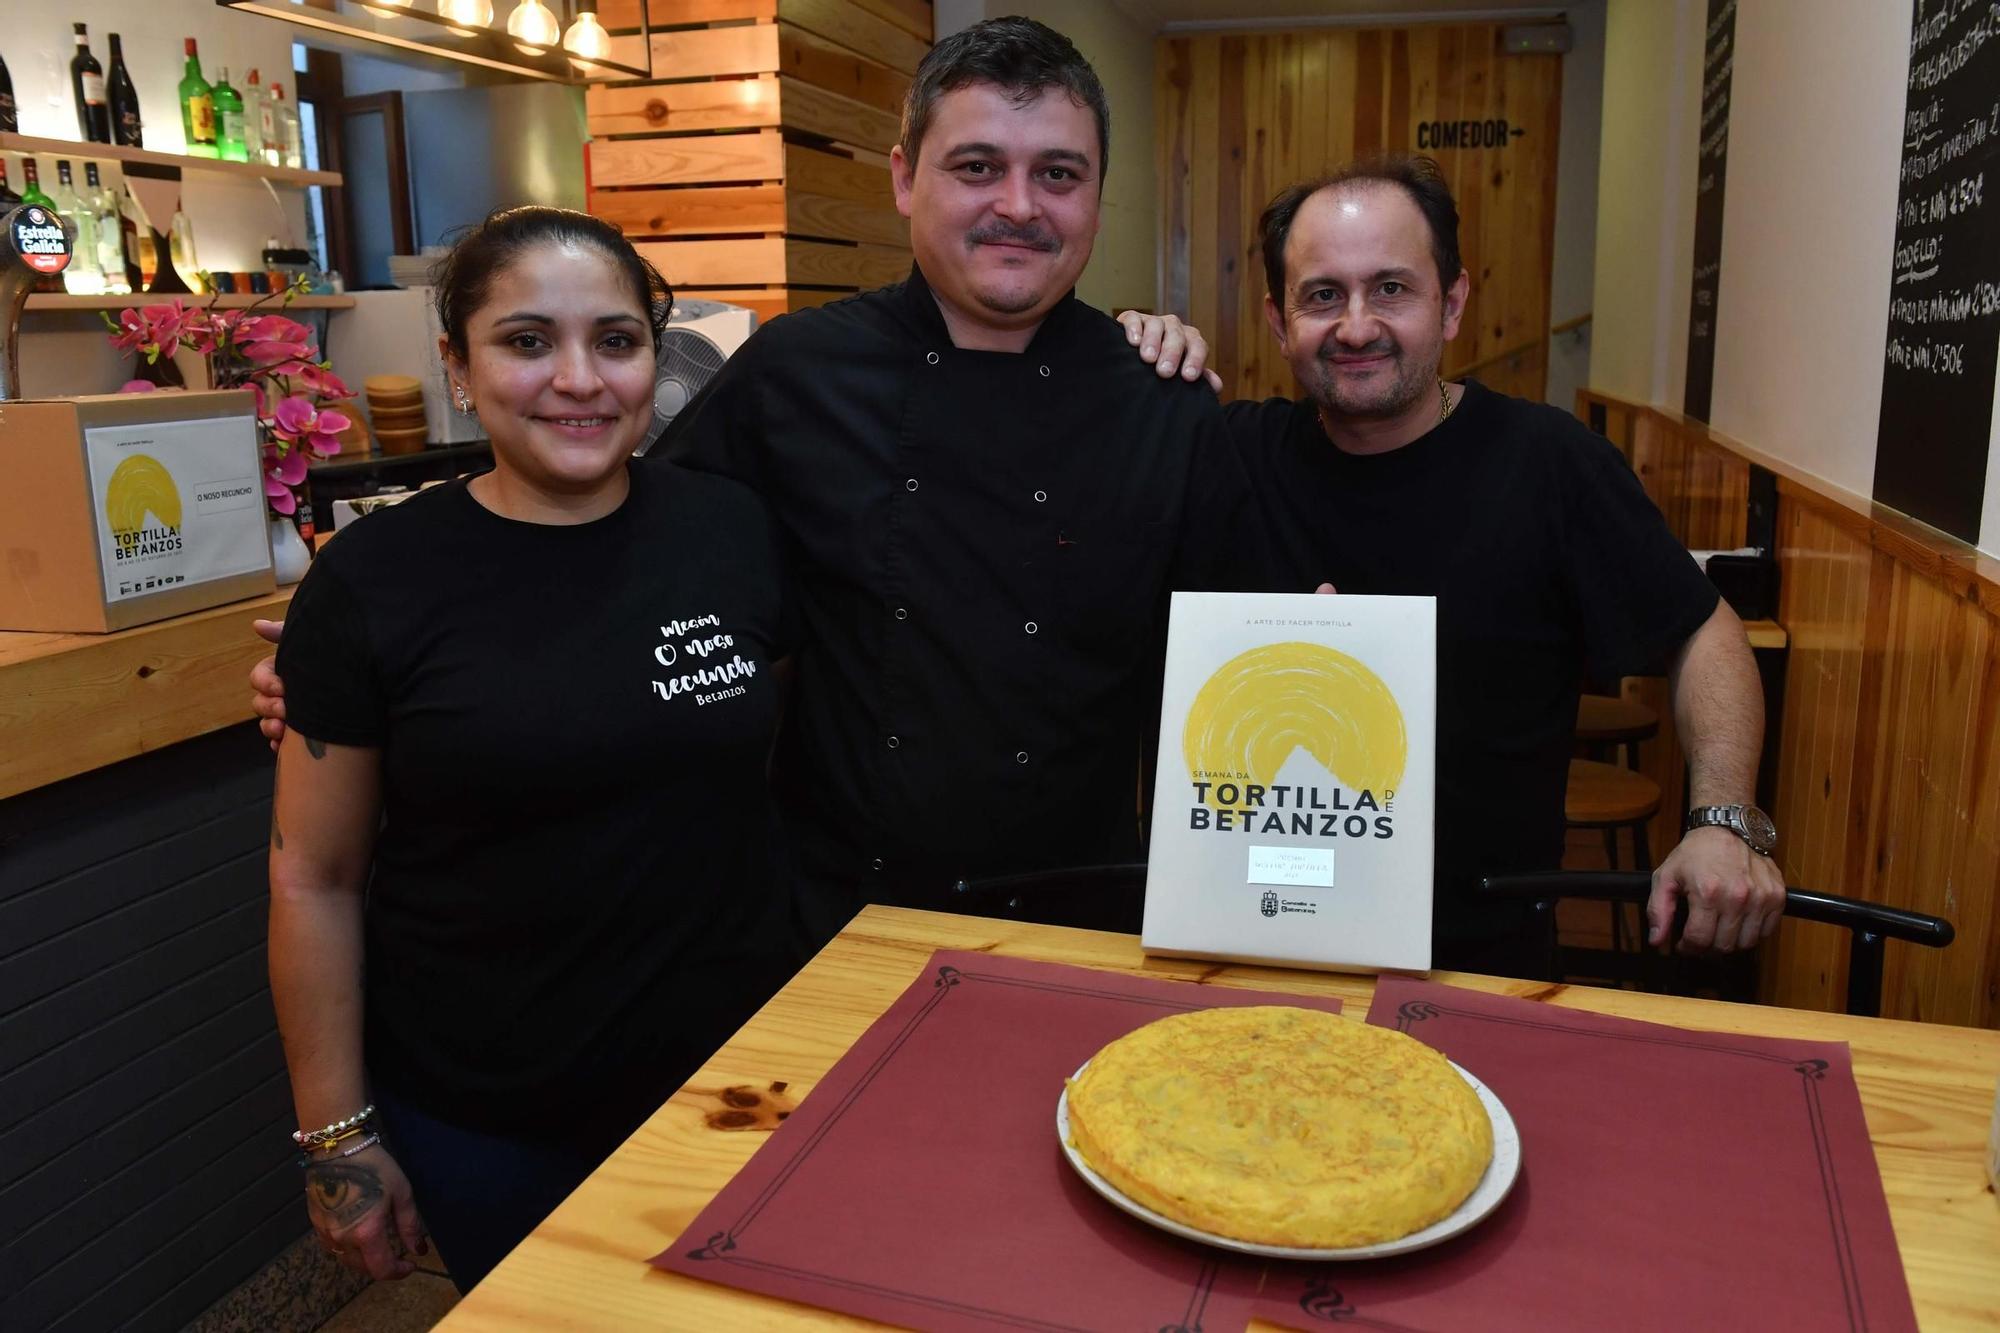 O Noso Recuncho gana el premio a la Mejor Tortilla de Betanzos